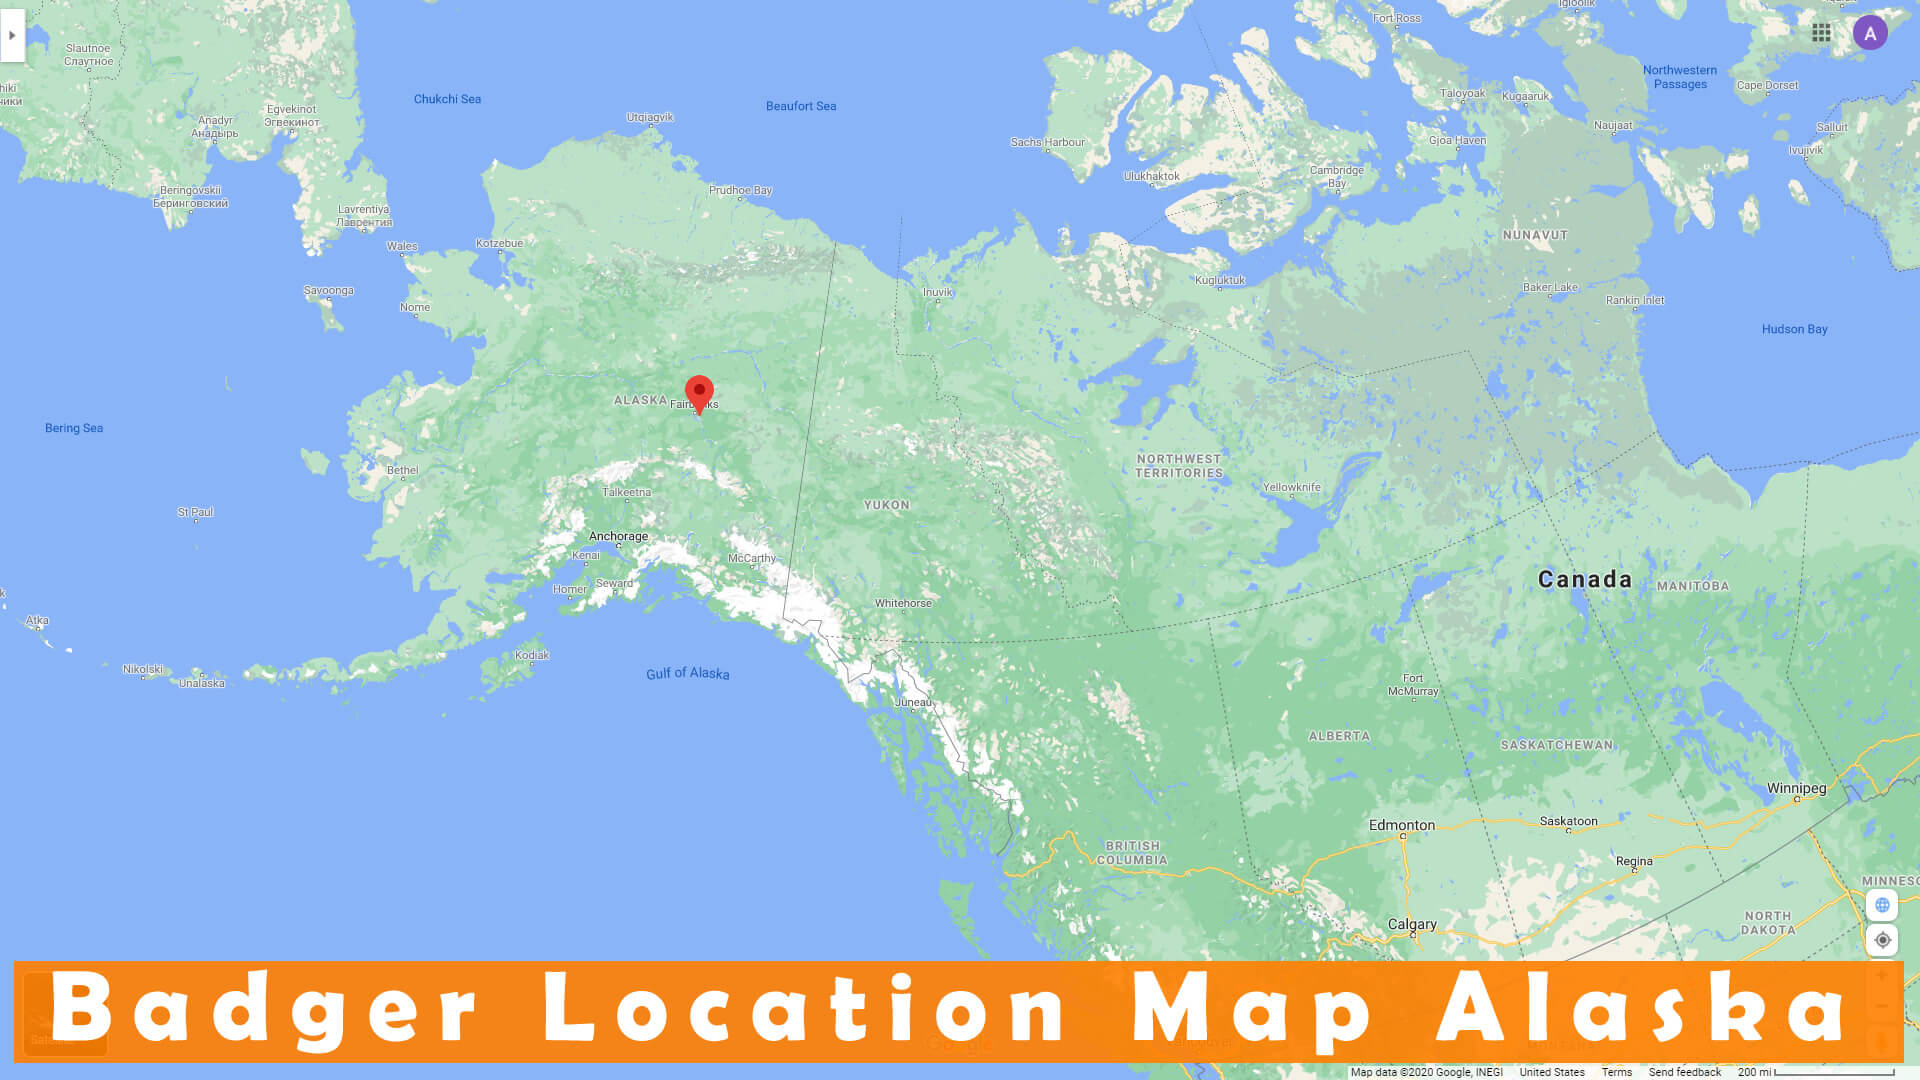 Badger Location Map Alaska